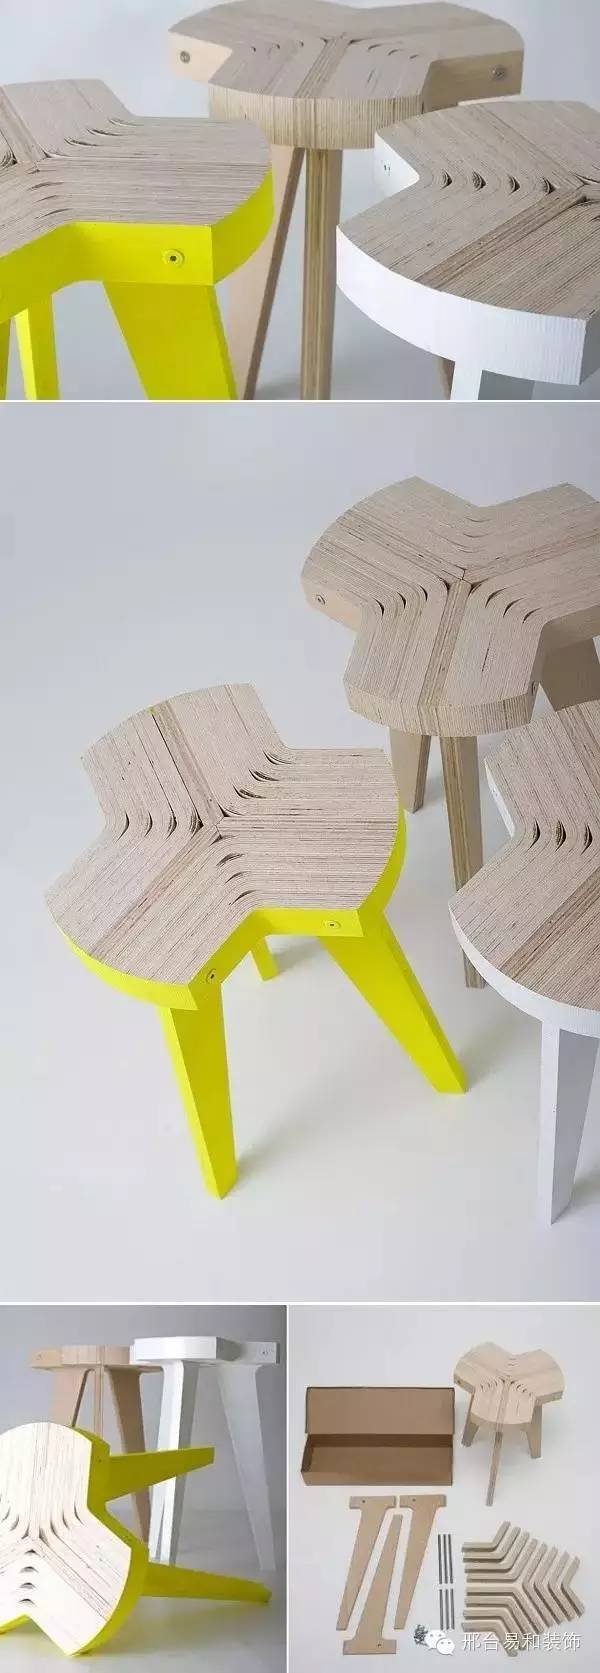 创意设计谁家没个小凳子呢